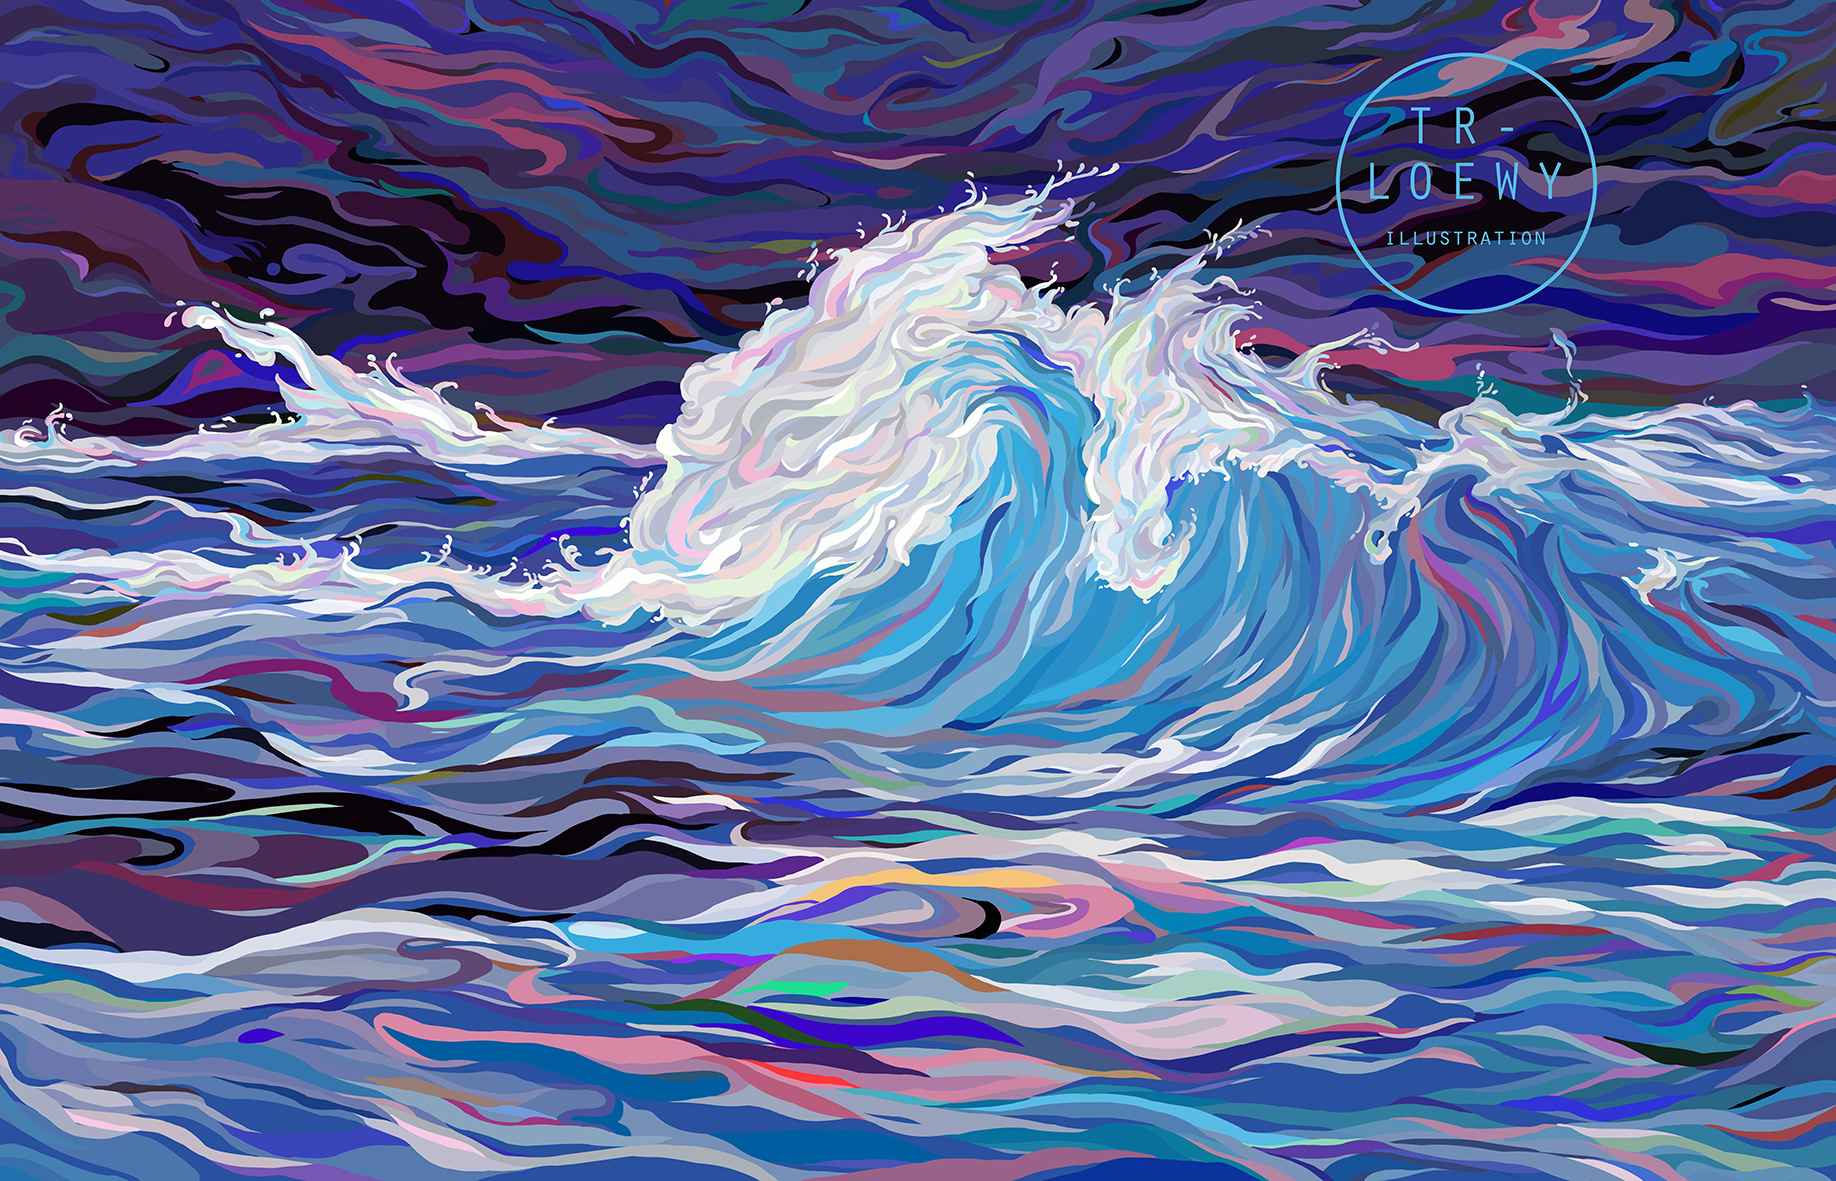 一艘蓝红相间轮船在巨大海浪中航行手绘插画_站酷海洛_正版图片_视频_字体_音乐素材交易平台_站酷旗下品牌